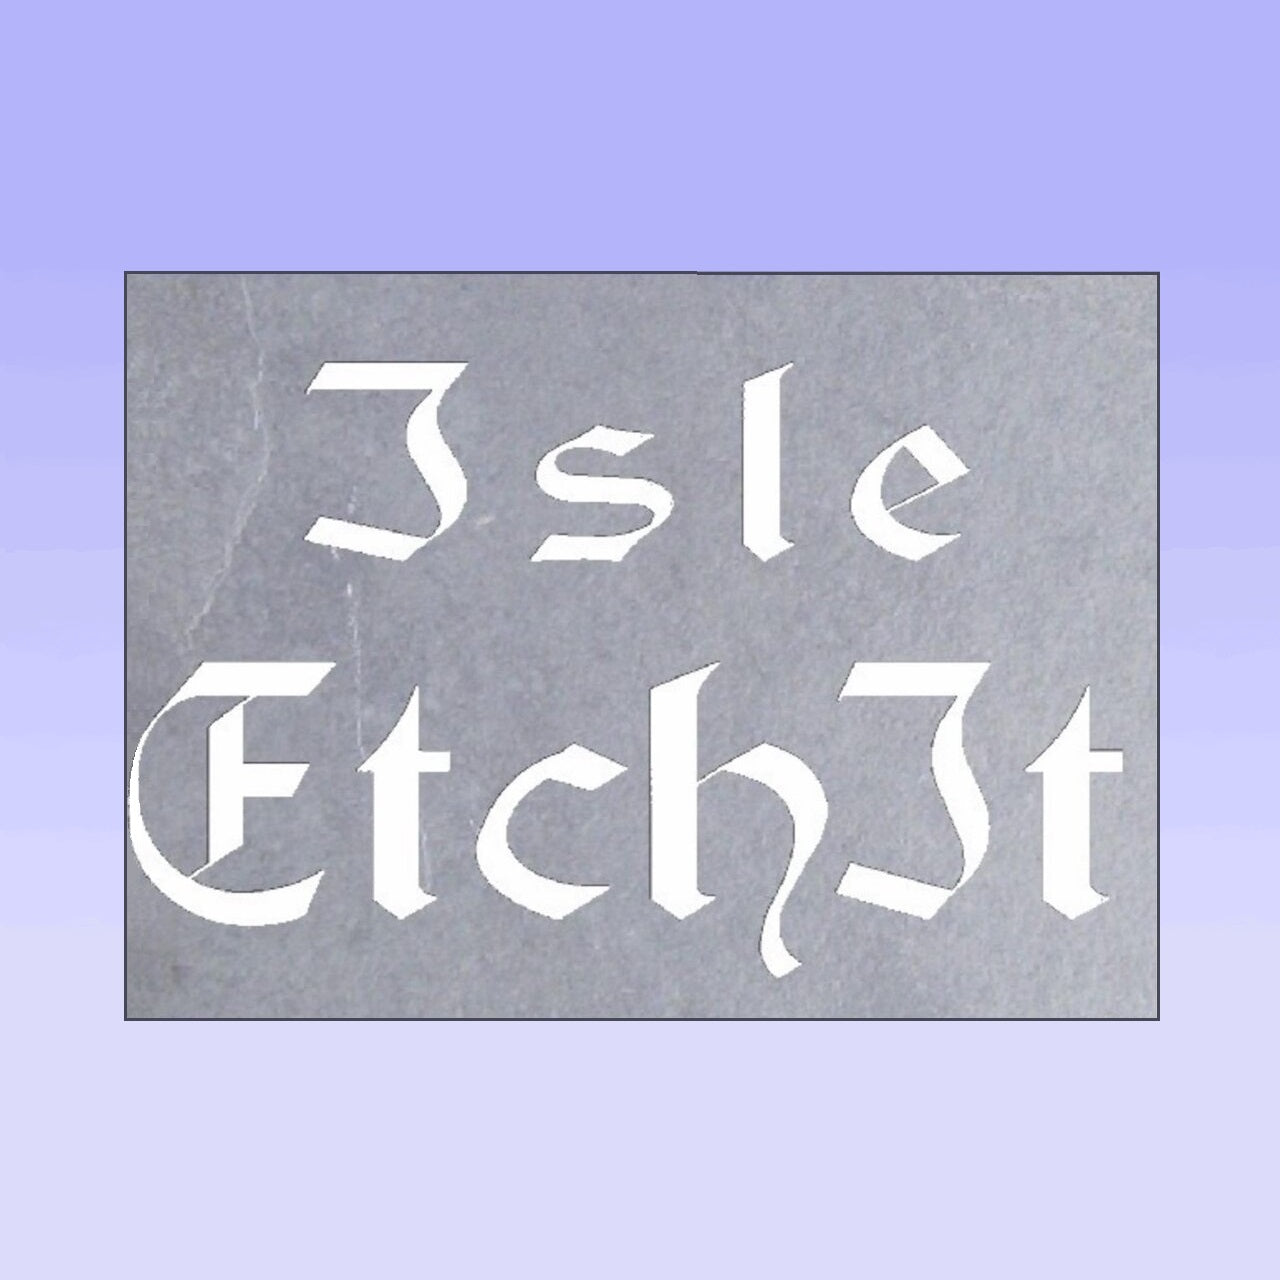 Isle EtchIt